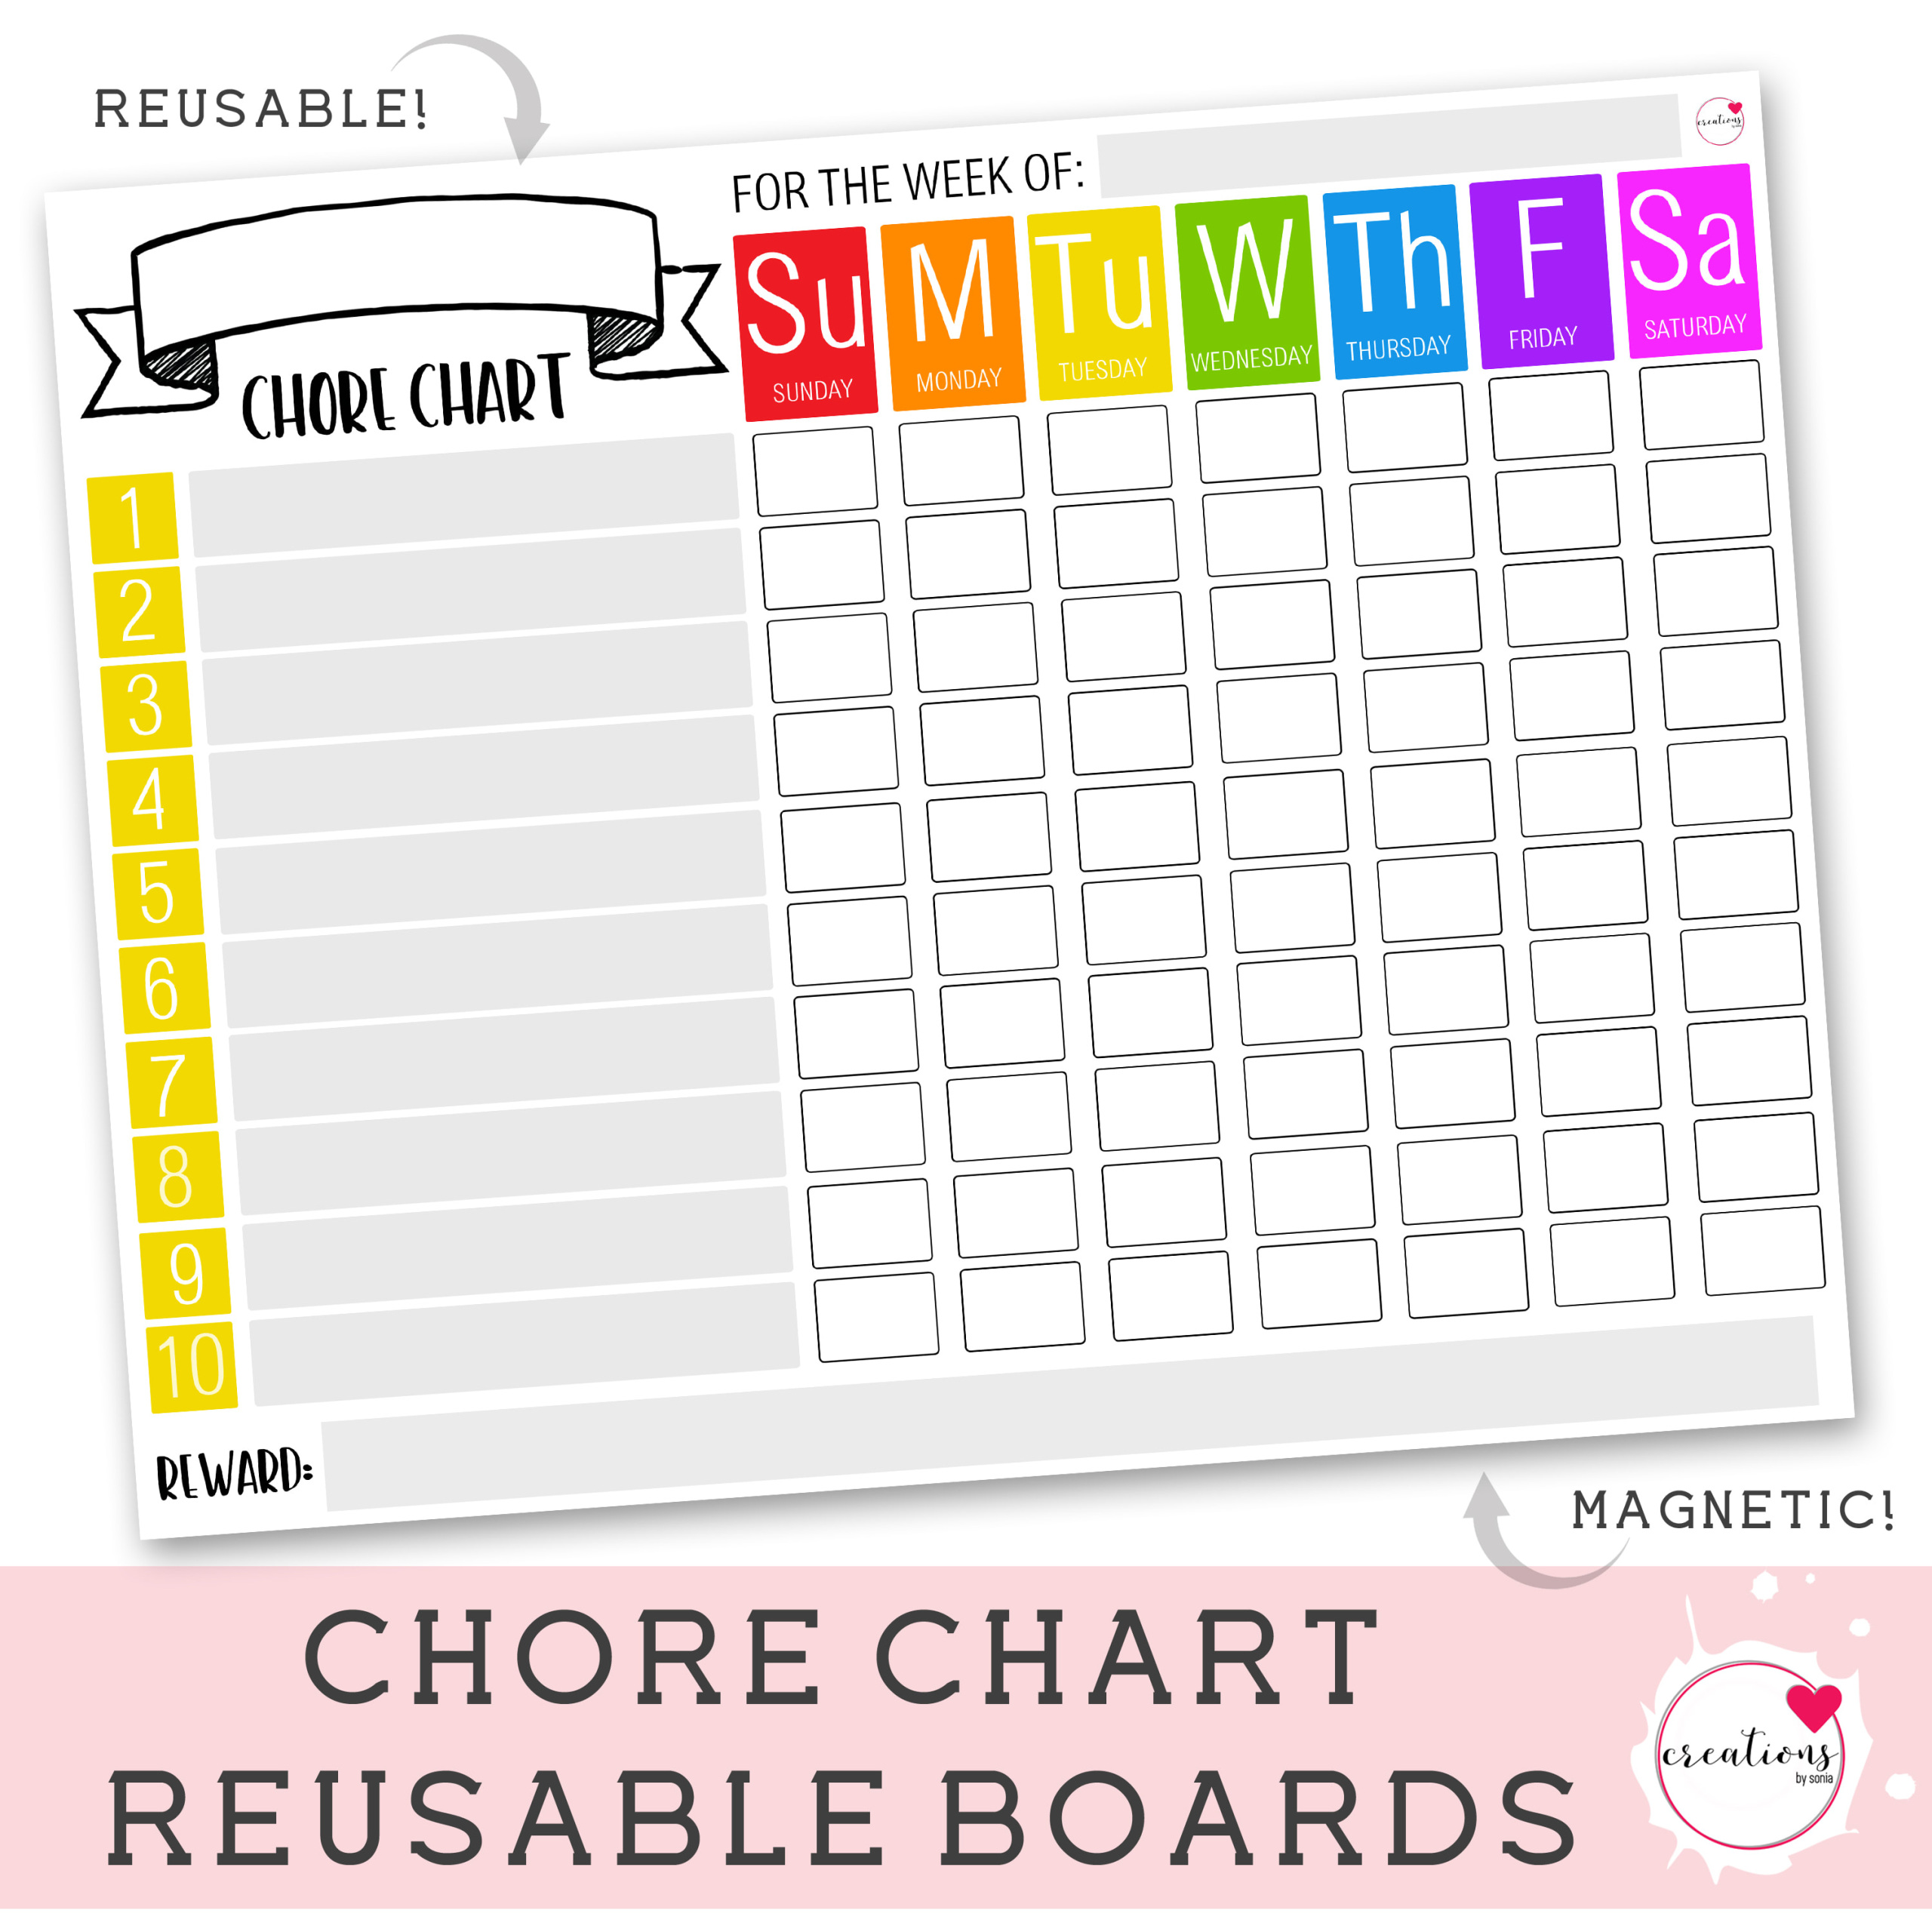 Reusable Chore Charts